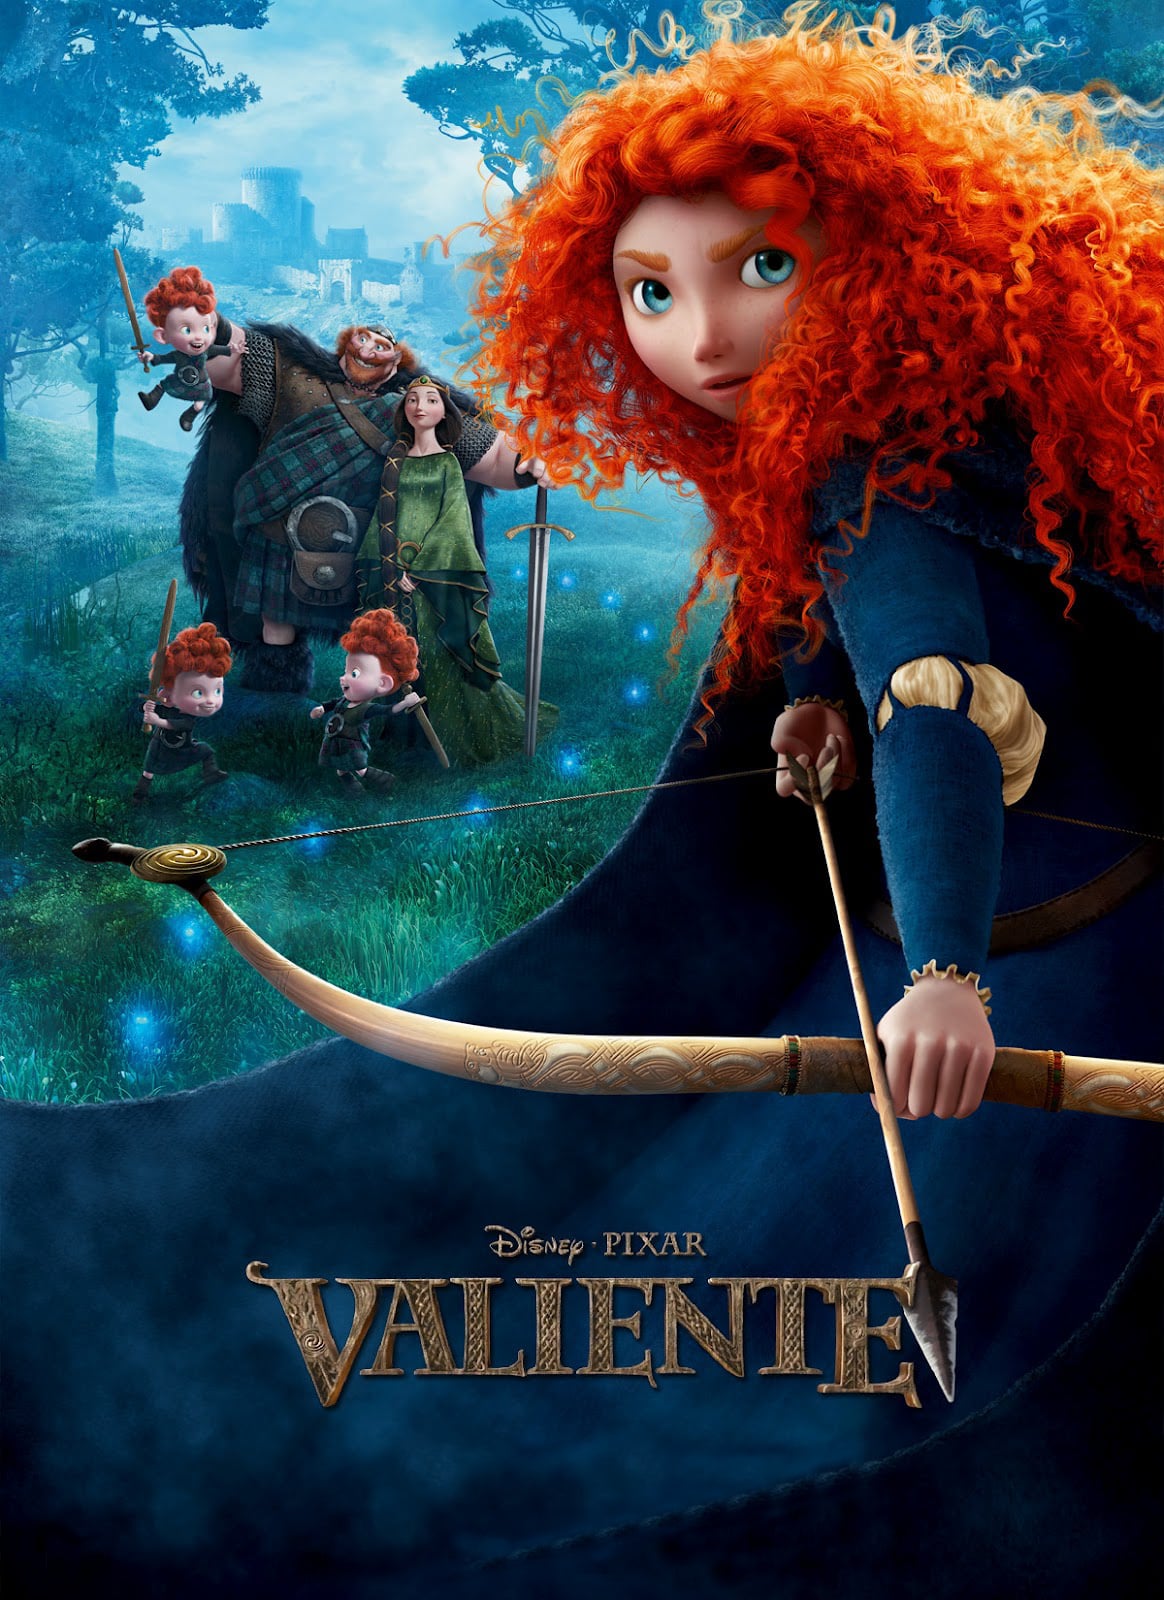 La voz de los valientes (Spanish Edition)